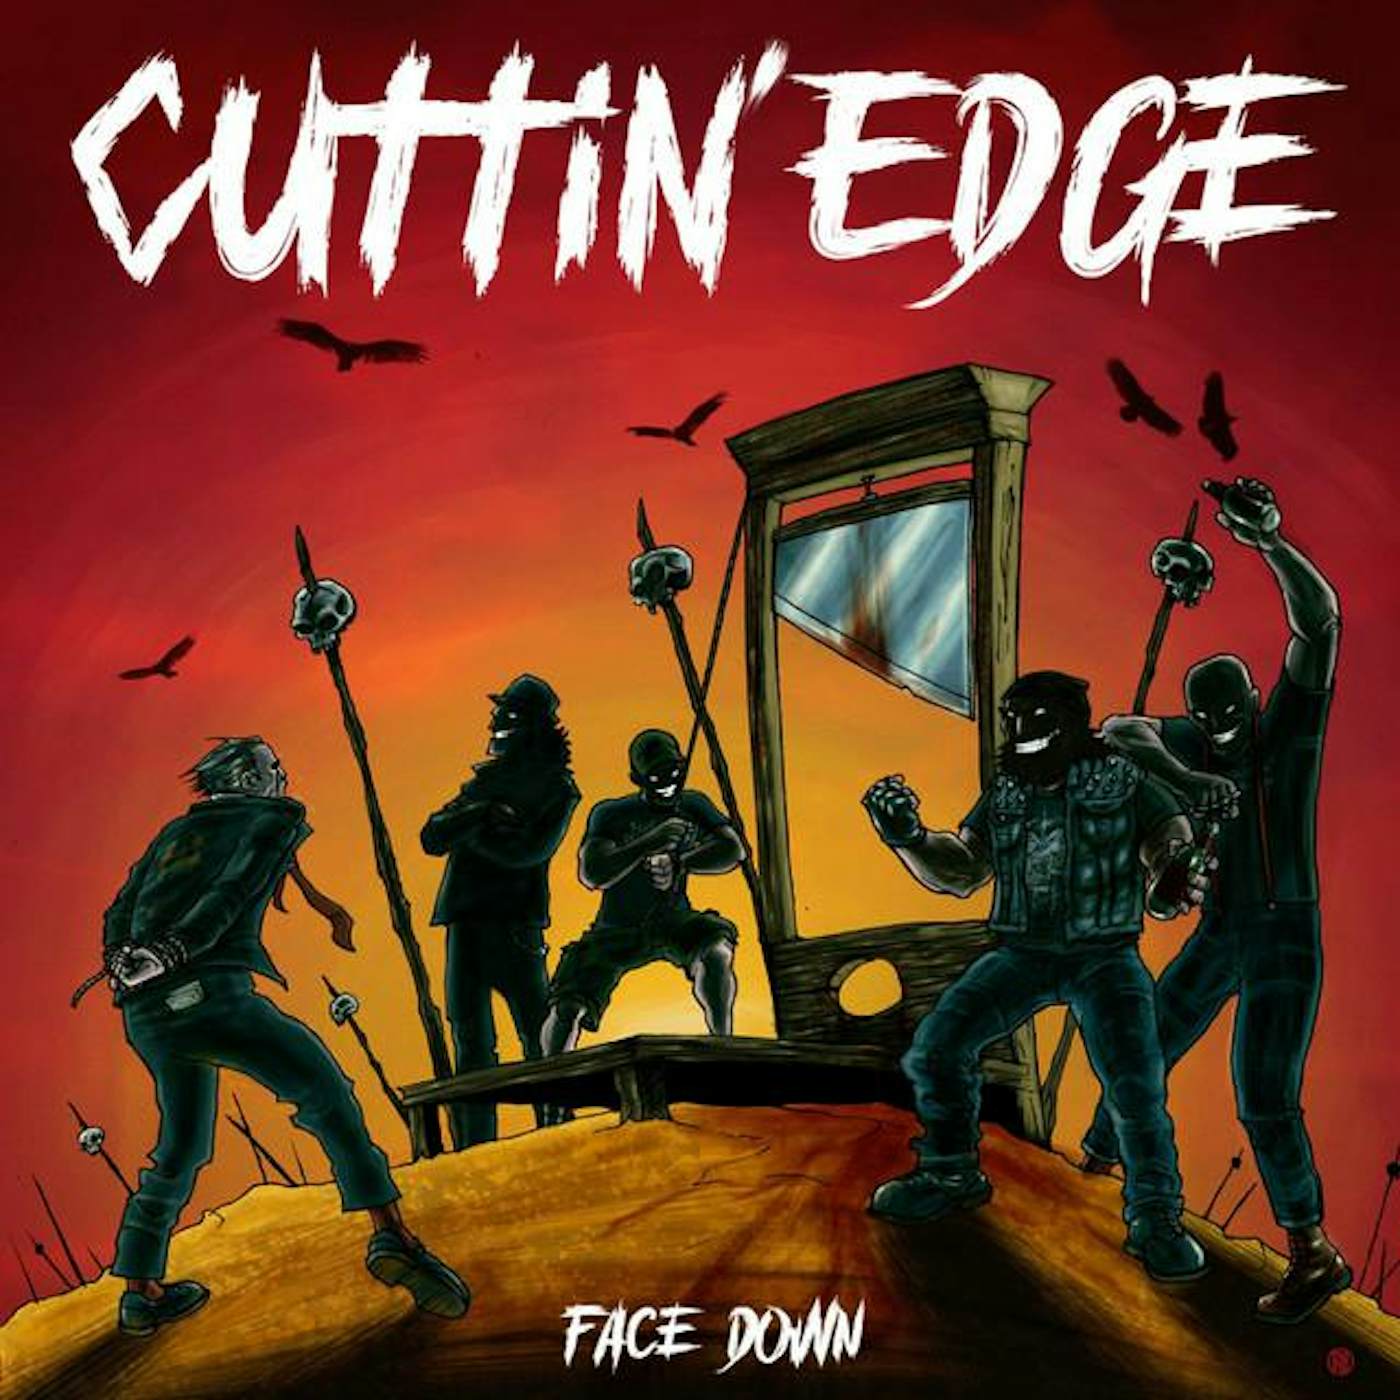 Cuttin' Edge